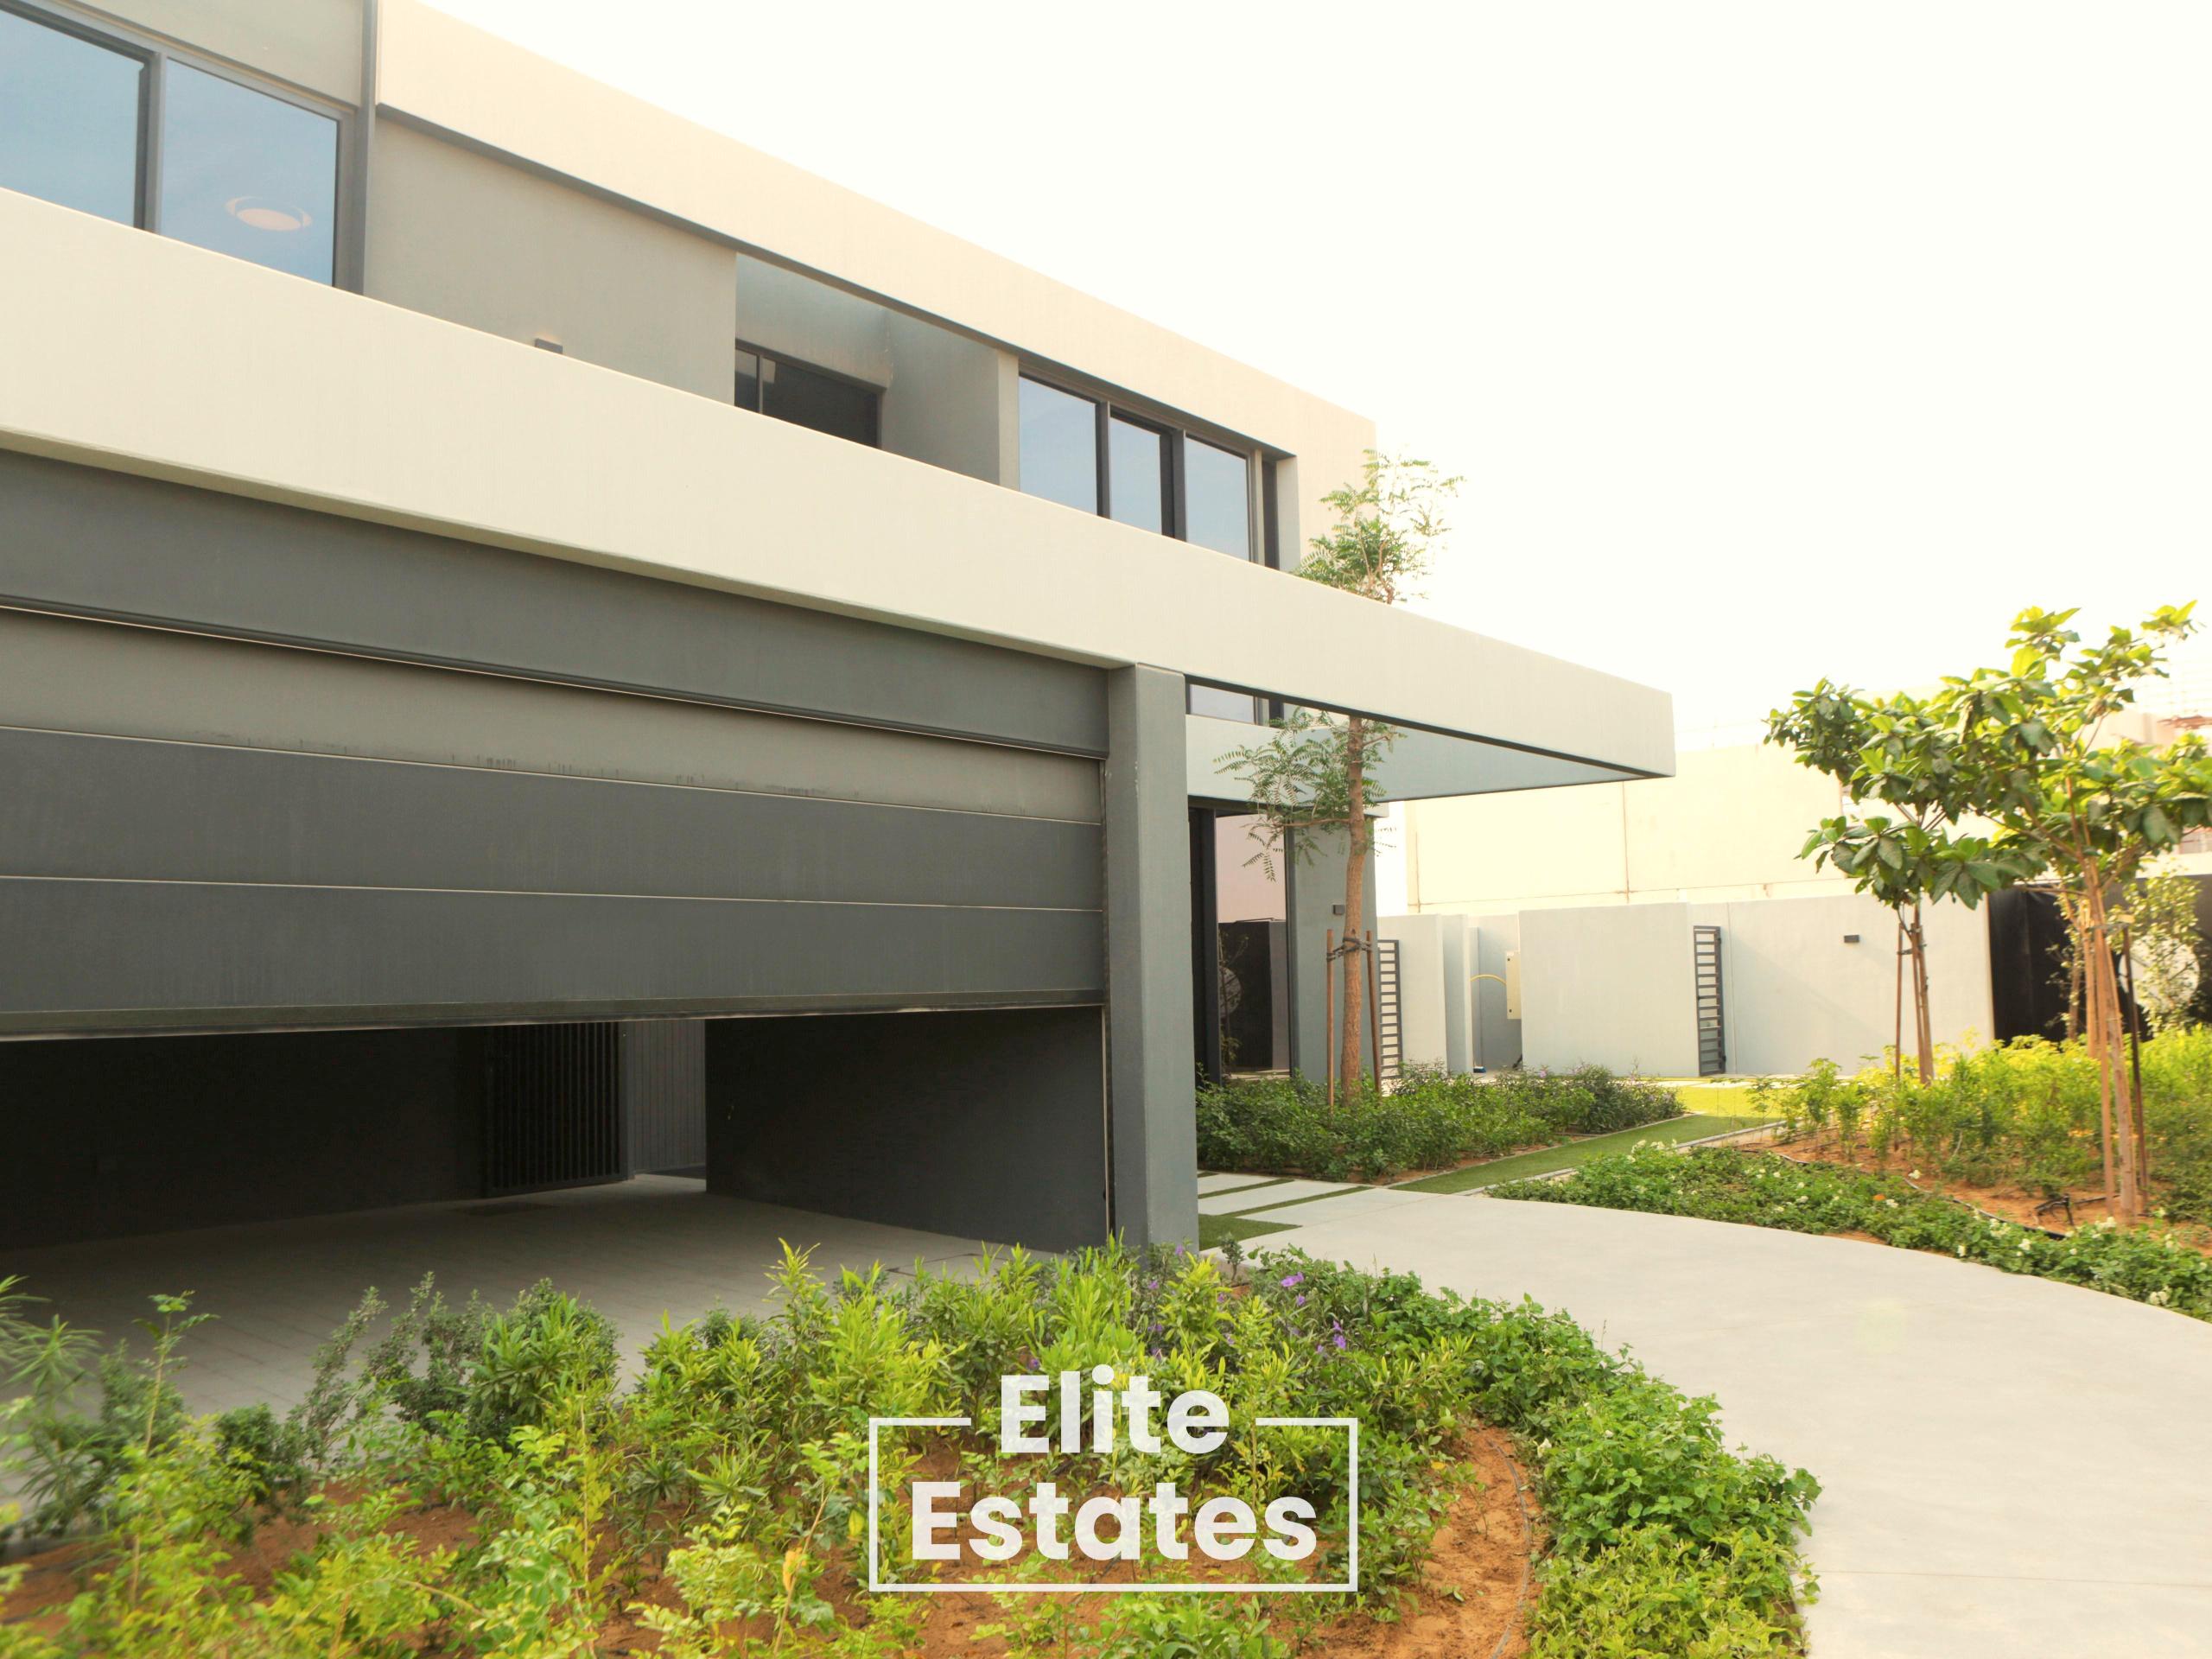 Real Estate_Villas for Sale_Tilal City